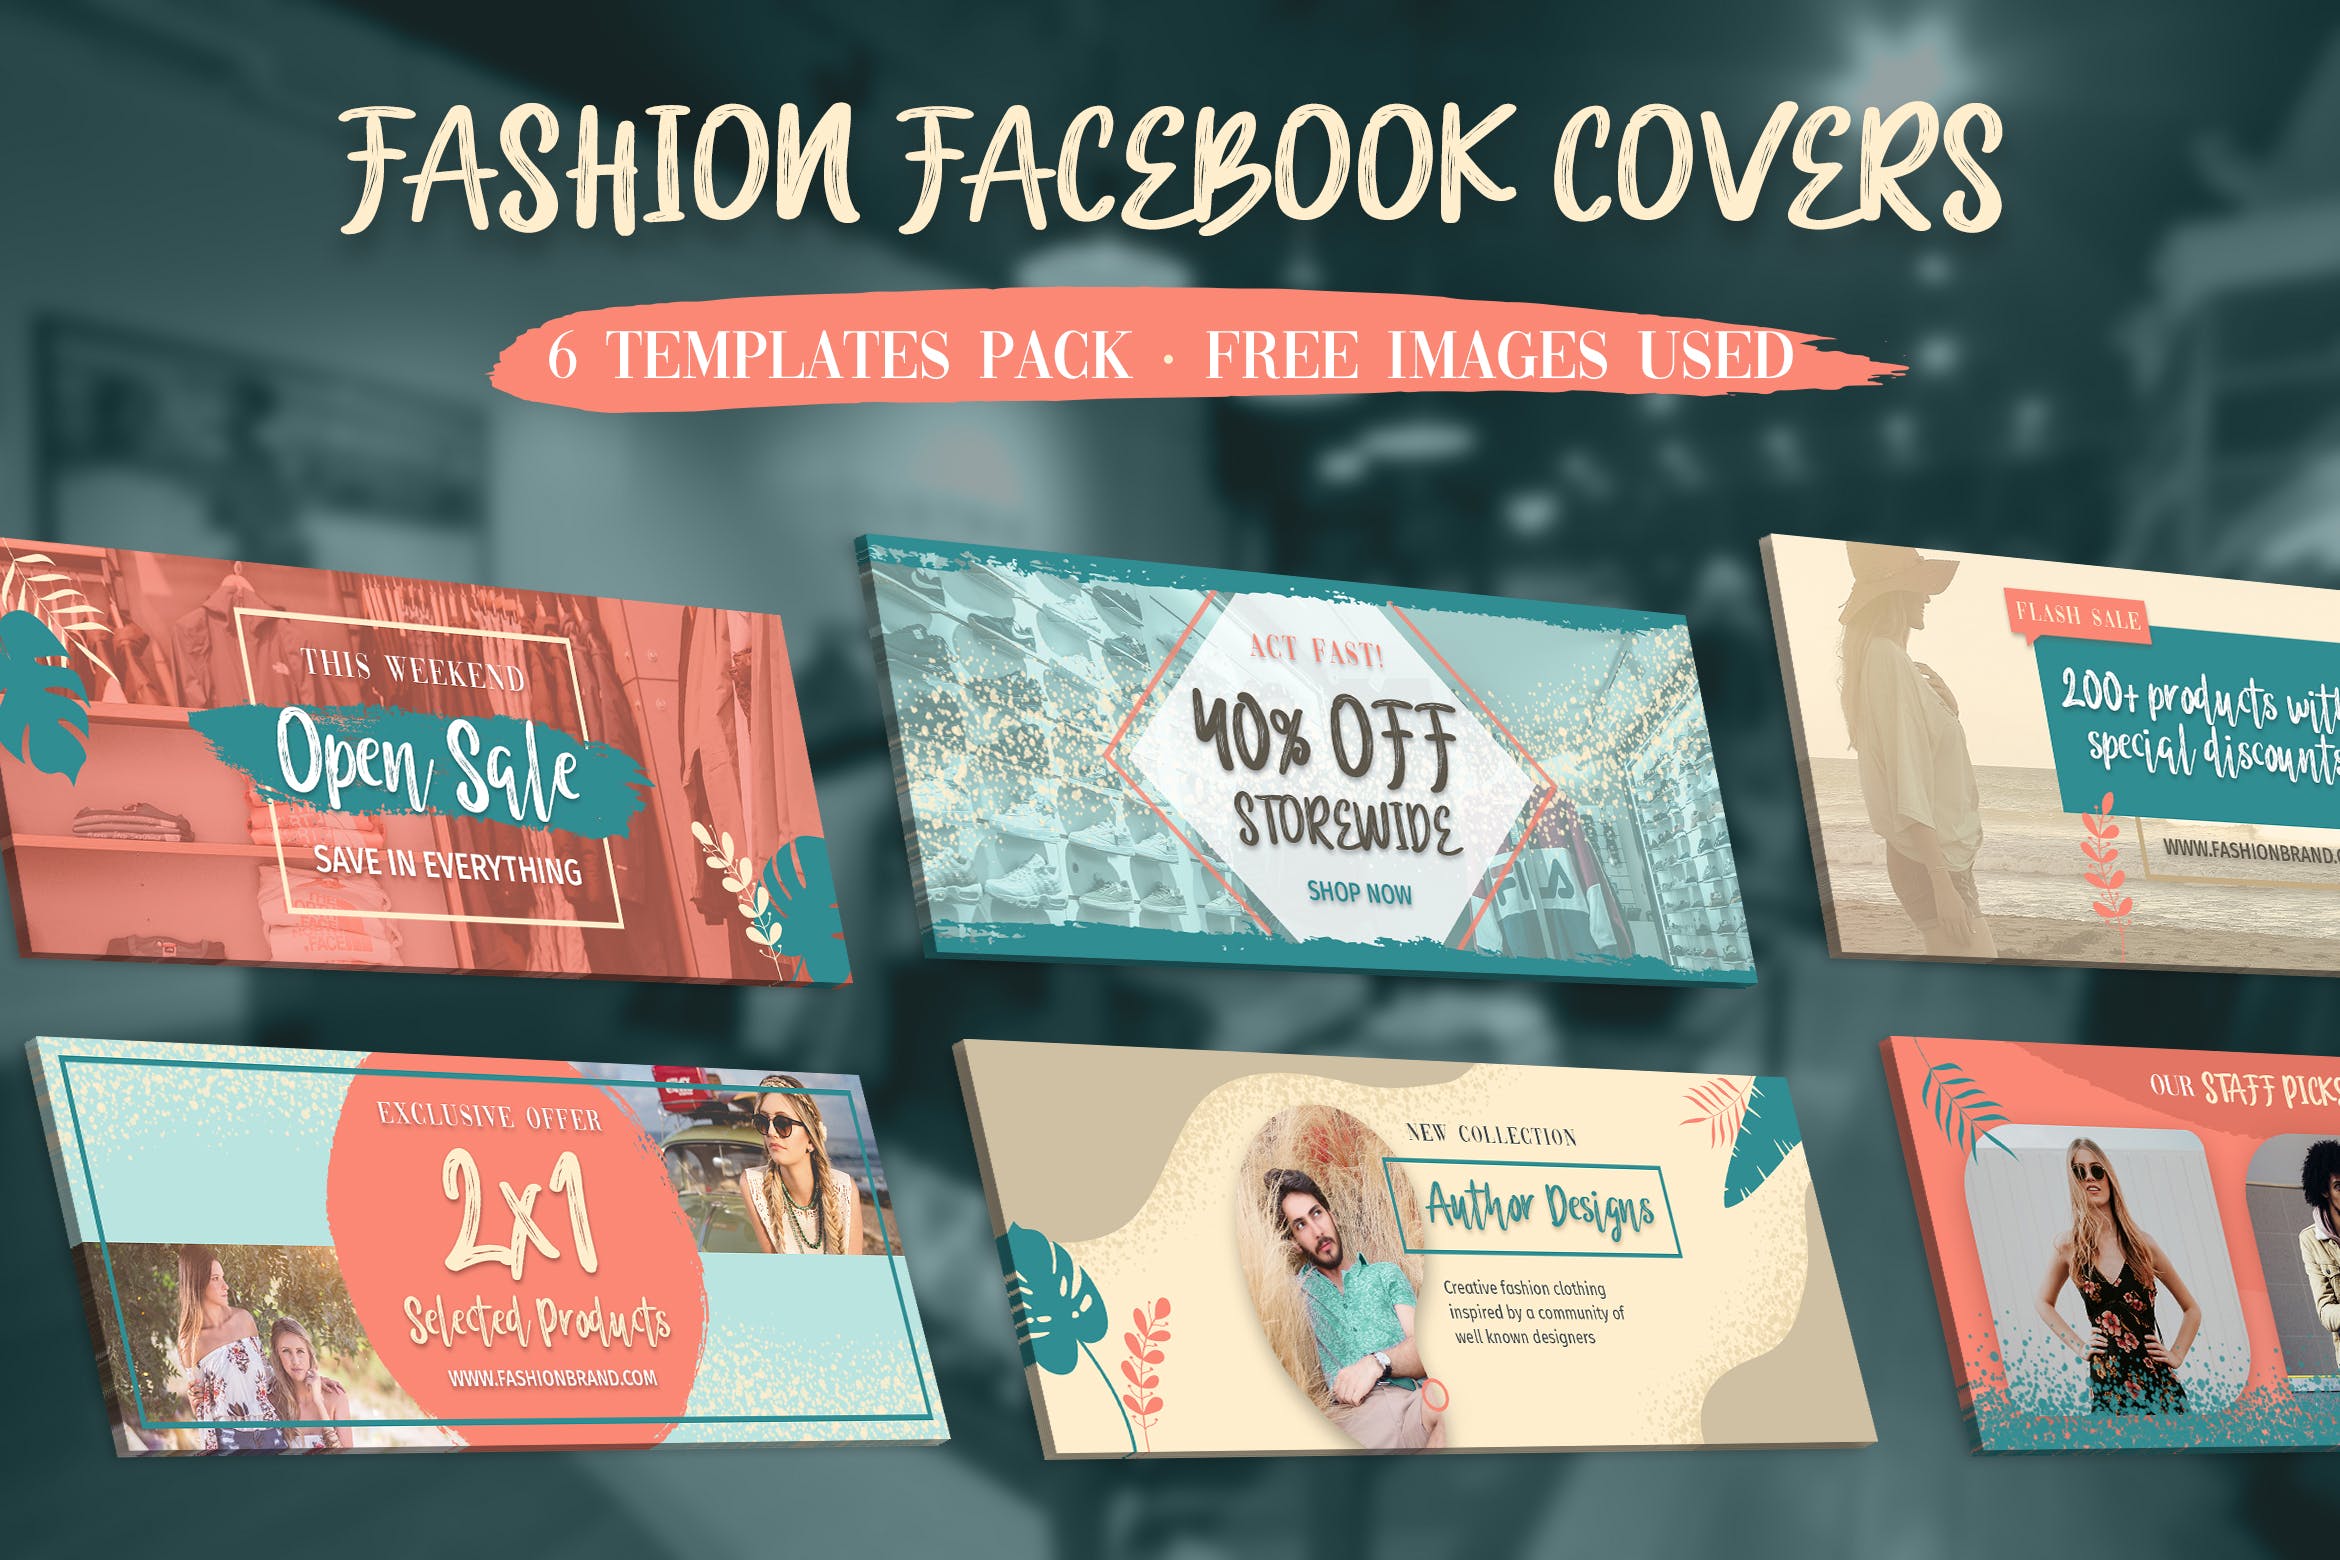 时尚品牌推广Facebook主页封面设计模板蚂蚁素材精选 Facebook Covers插图